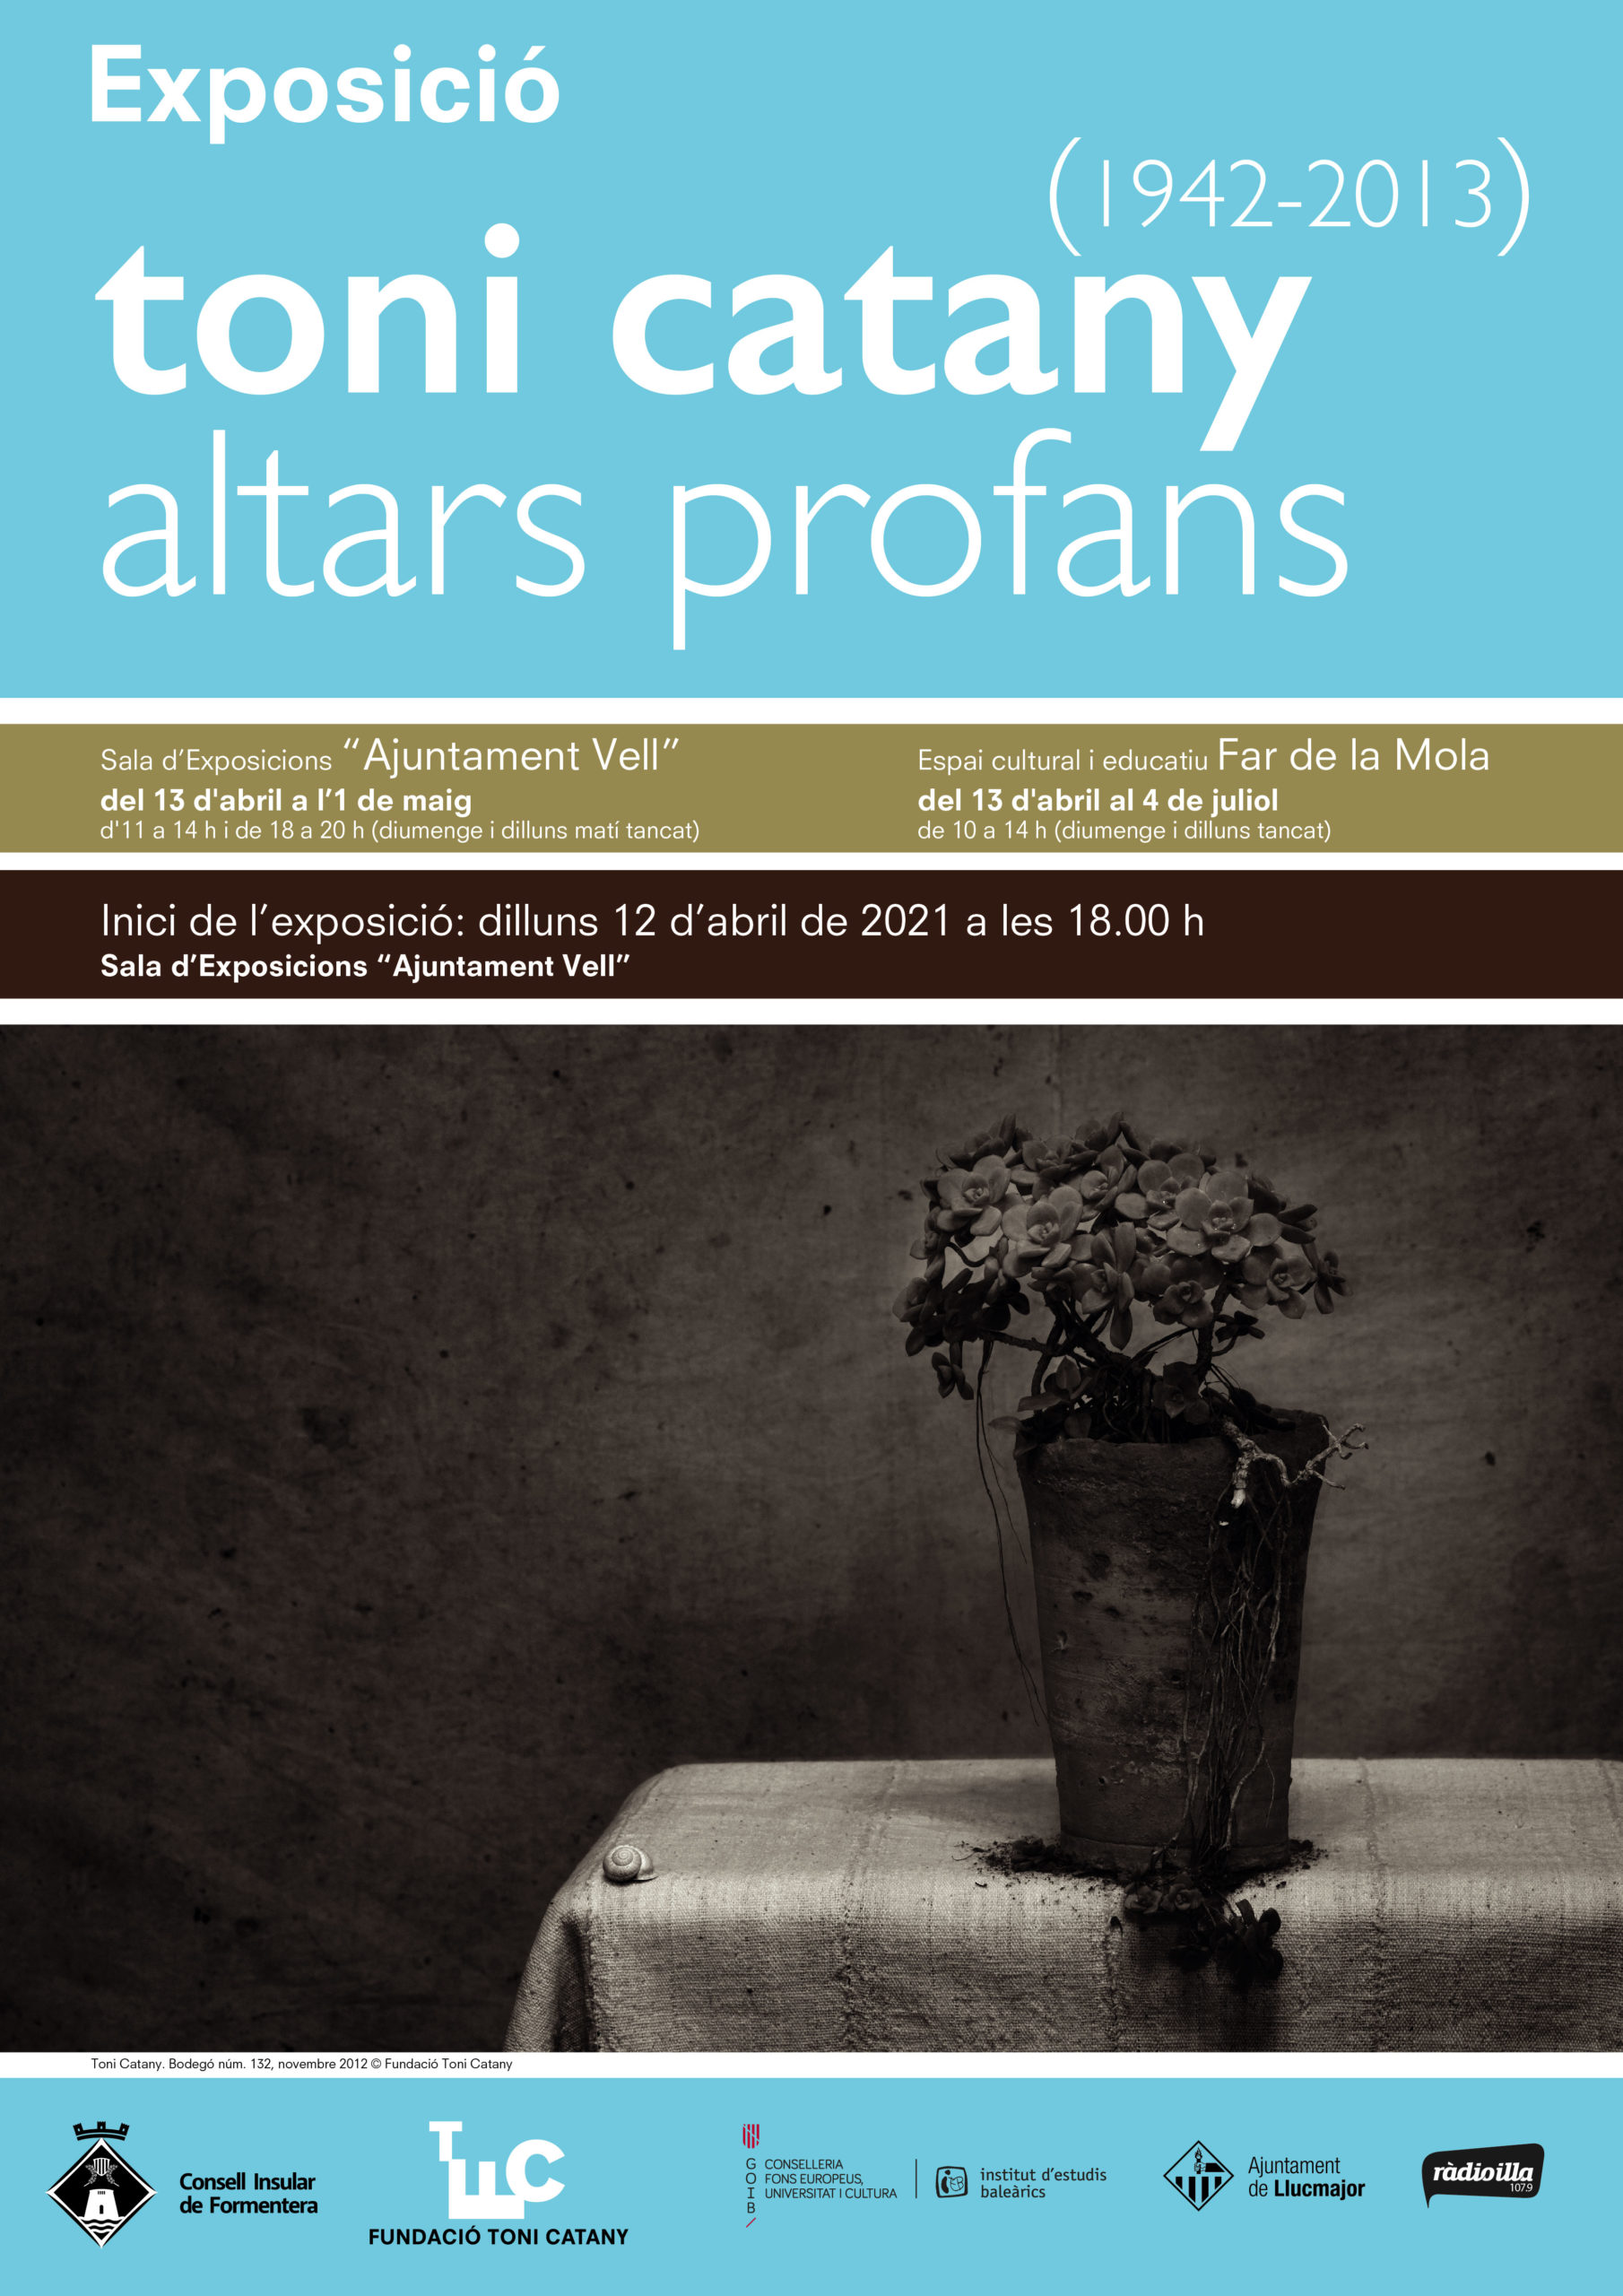 altars_profans